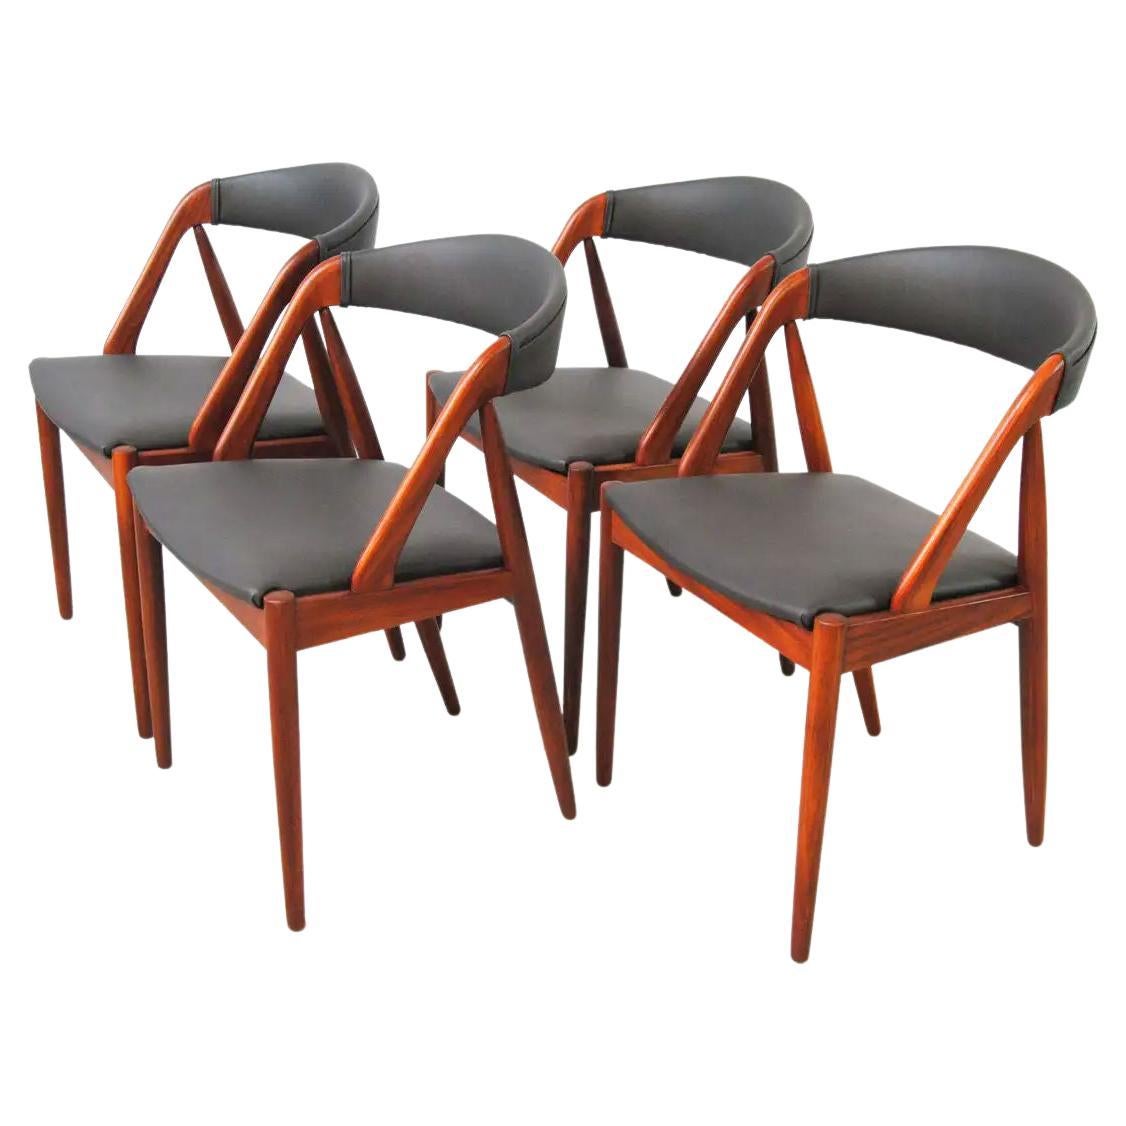 Quatre chaises de salle à manger Kai Kristiansen en teck restaurées, retapissées sur mesure incluses en vente